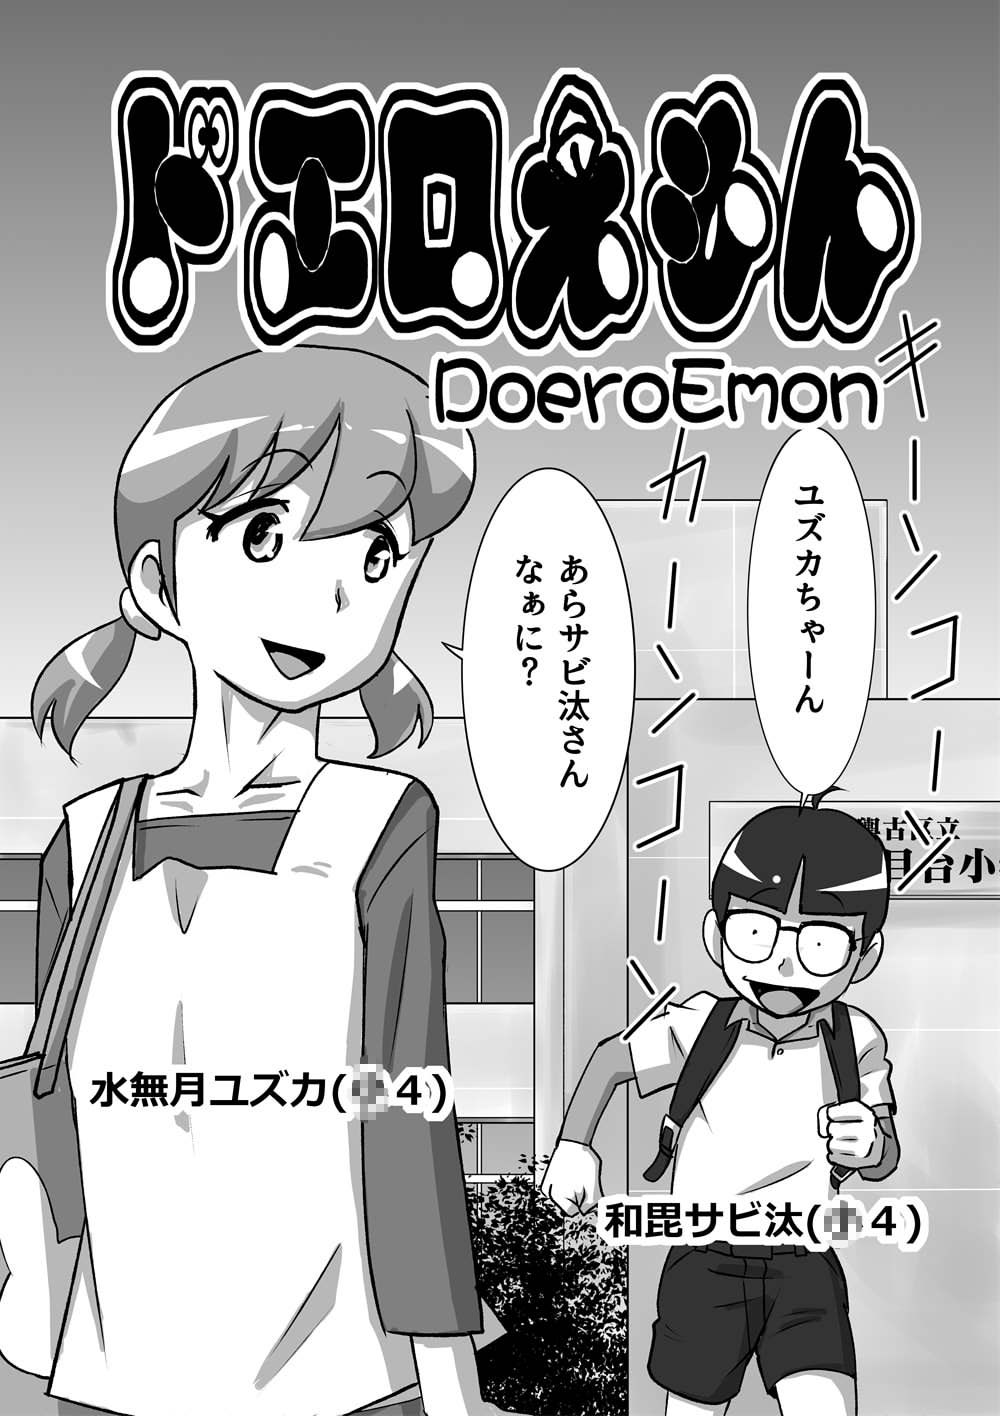 Doraemon Shizuka Xxx - Shizuka Minamoto Porn Comics Â» Page 6 Of 11 Â» Hentai Porns - Manga And  Porncomics Xxx Hentai Comics